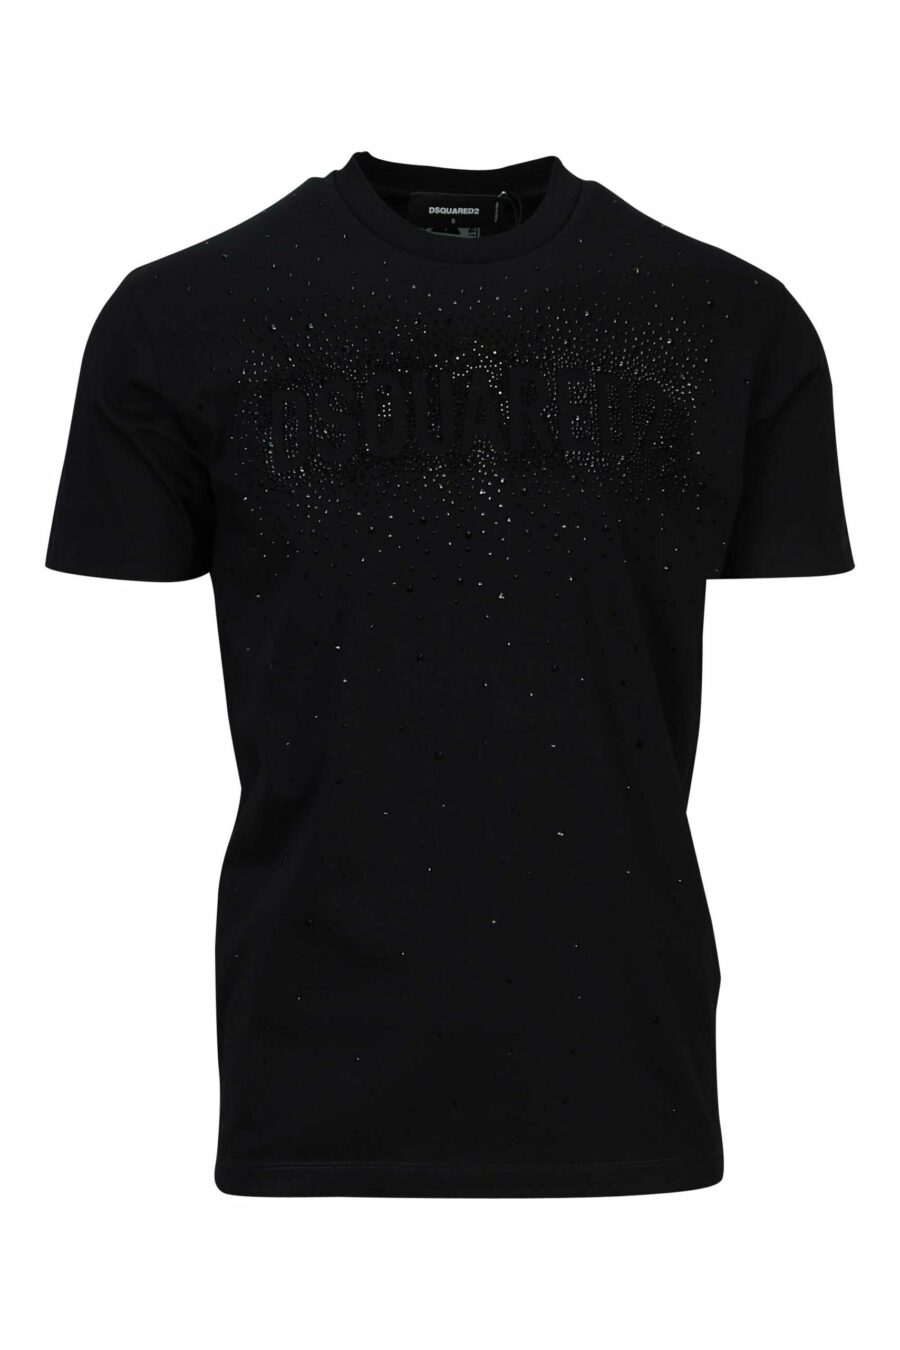 Schwarzes T-Shirt mit geprägtem schwarzem Maxilogo - 8054148448158 skaliert